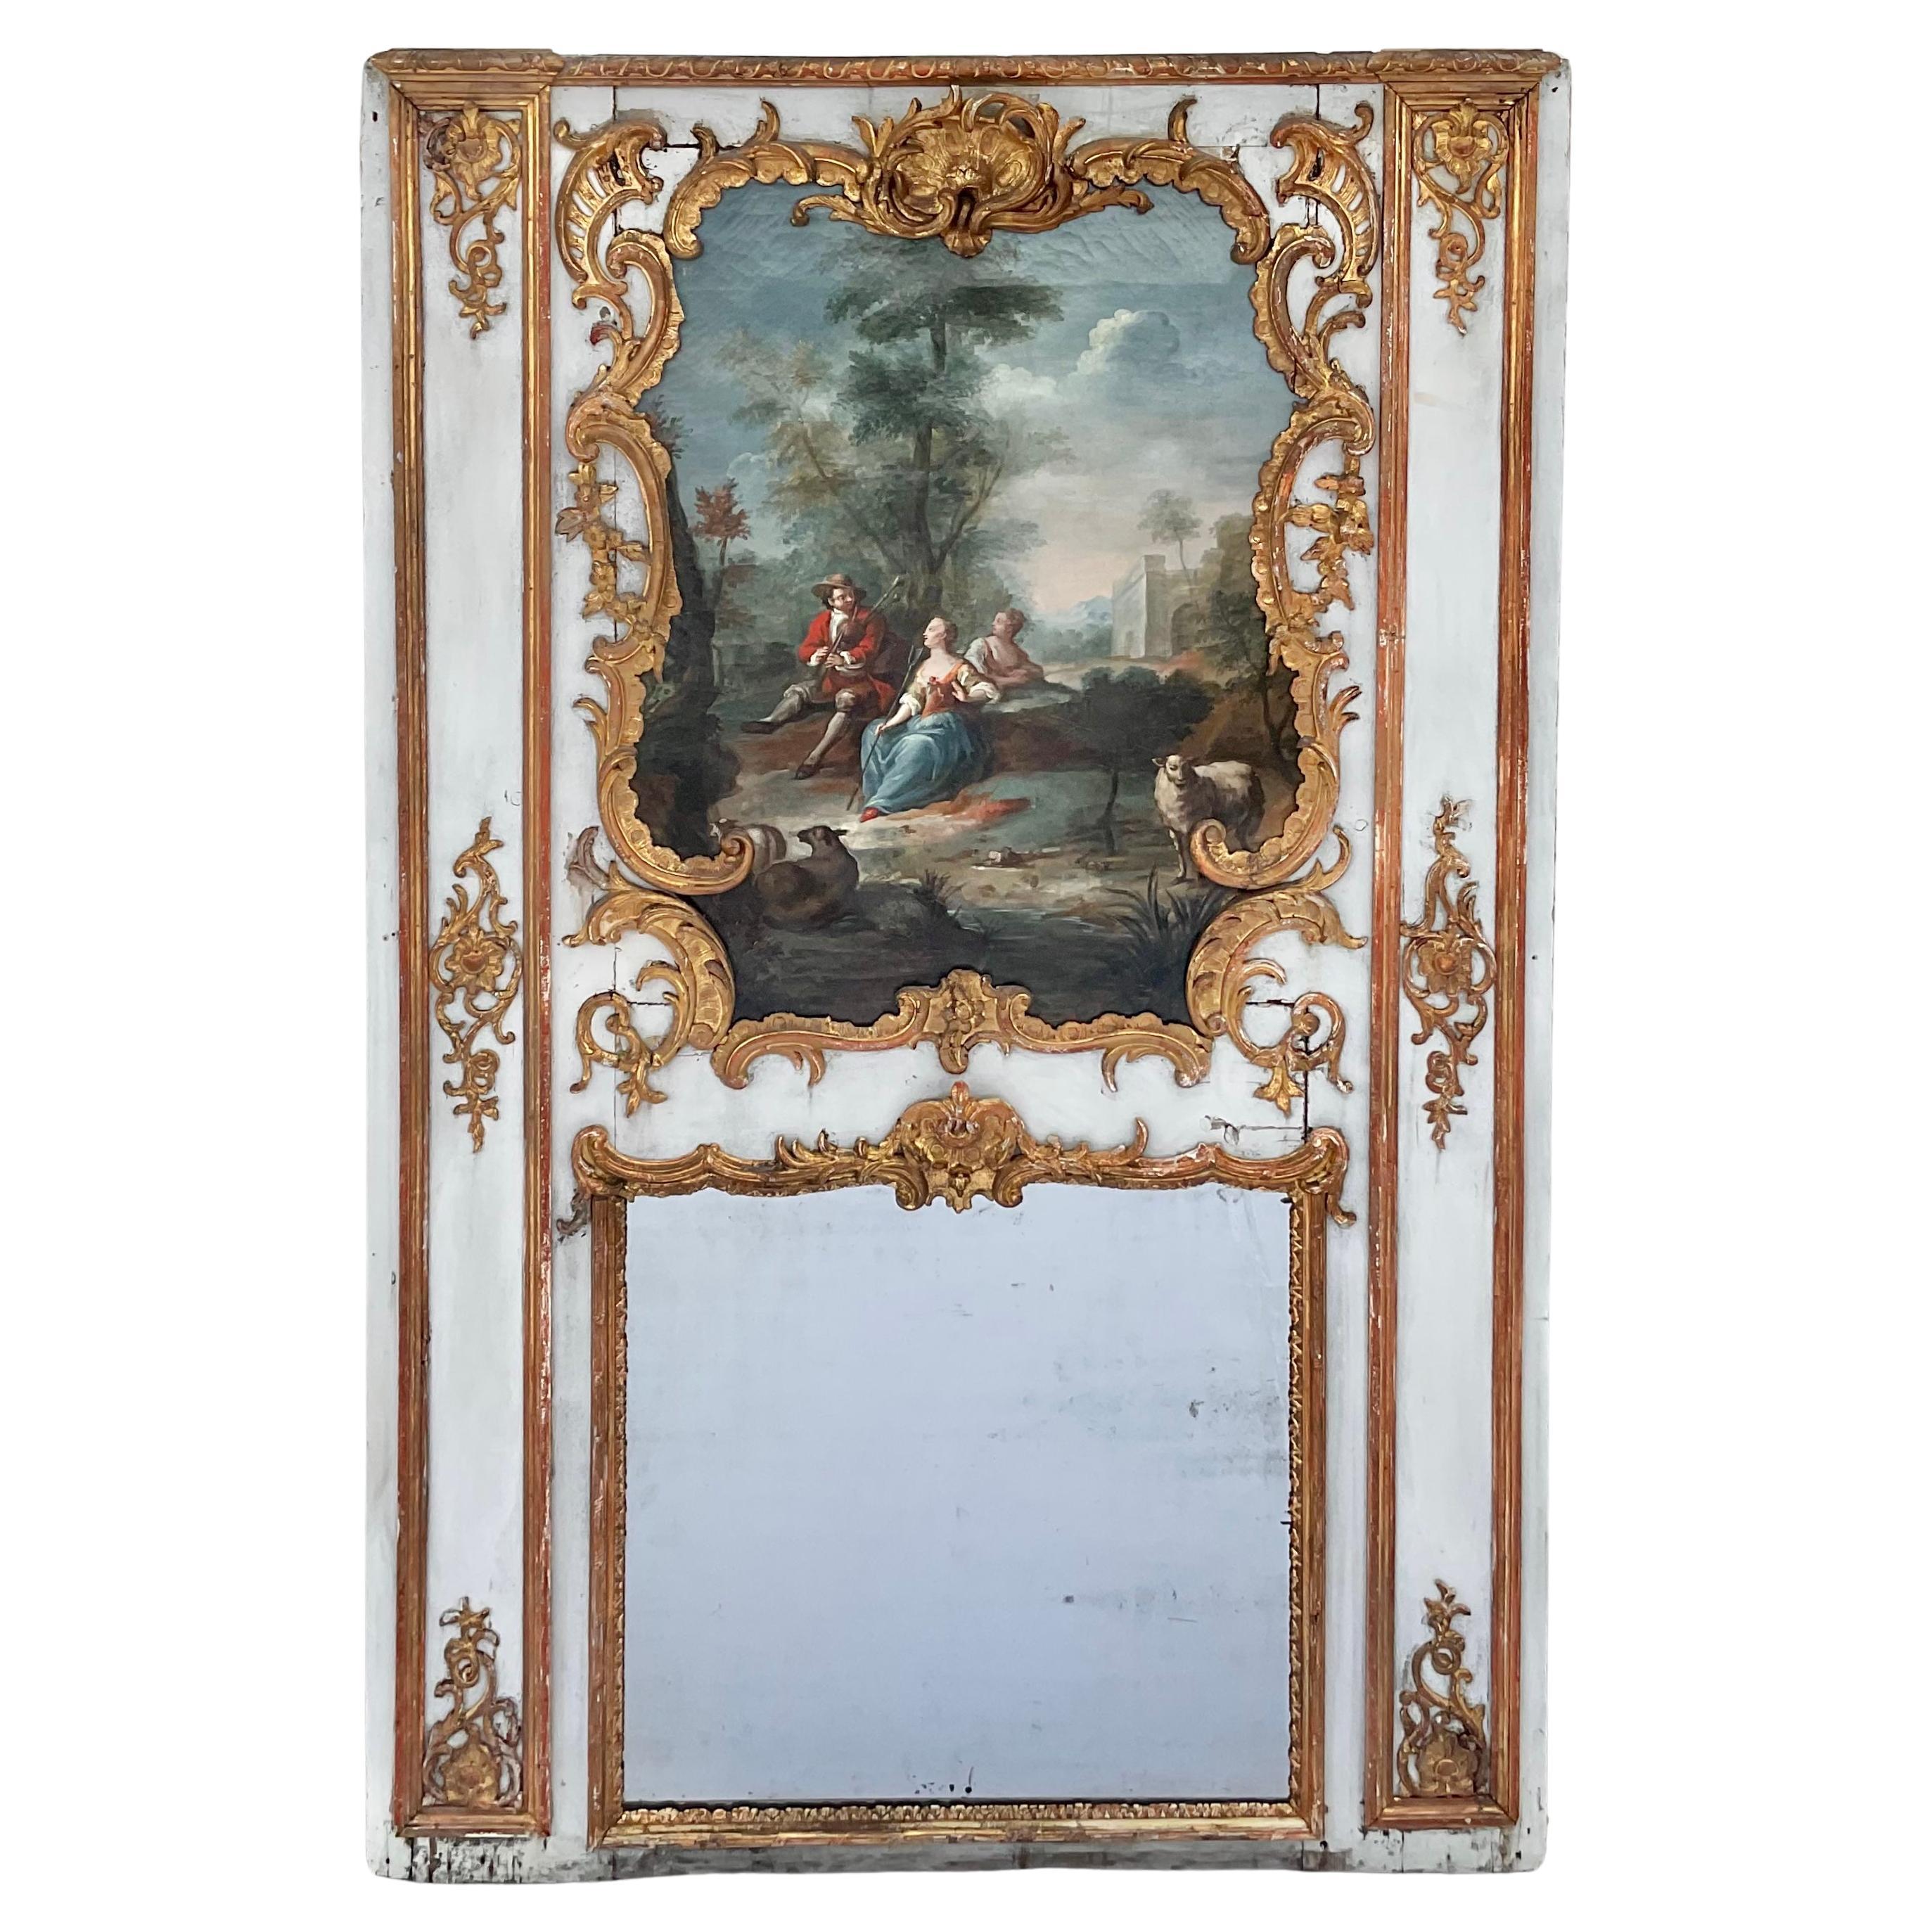 Monumentaler französischer Trumeau-Spiegel aus vergoldetem Holz aus dem 18. Jahrhundert mit Originalgemälde